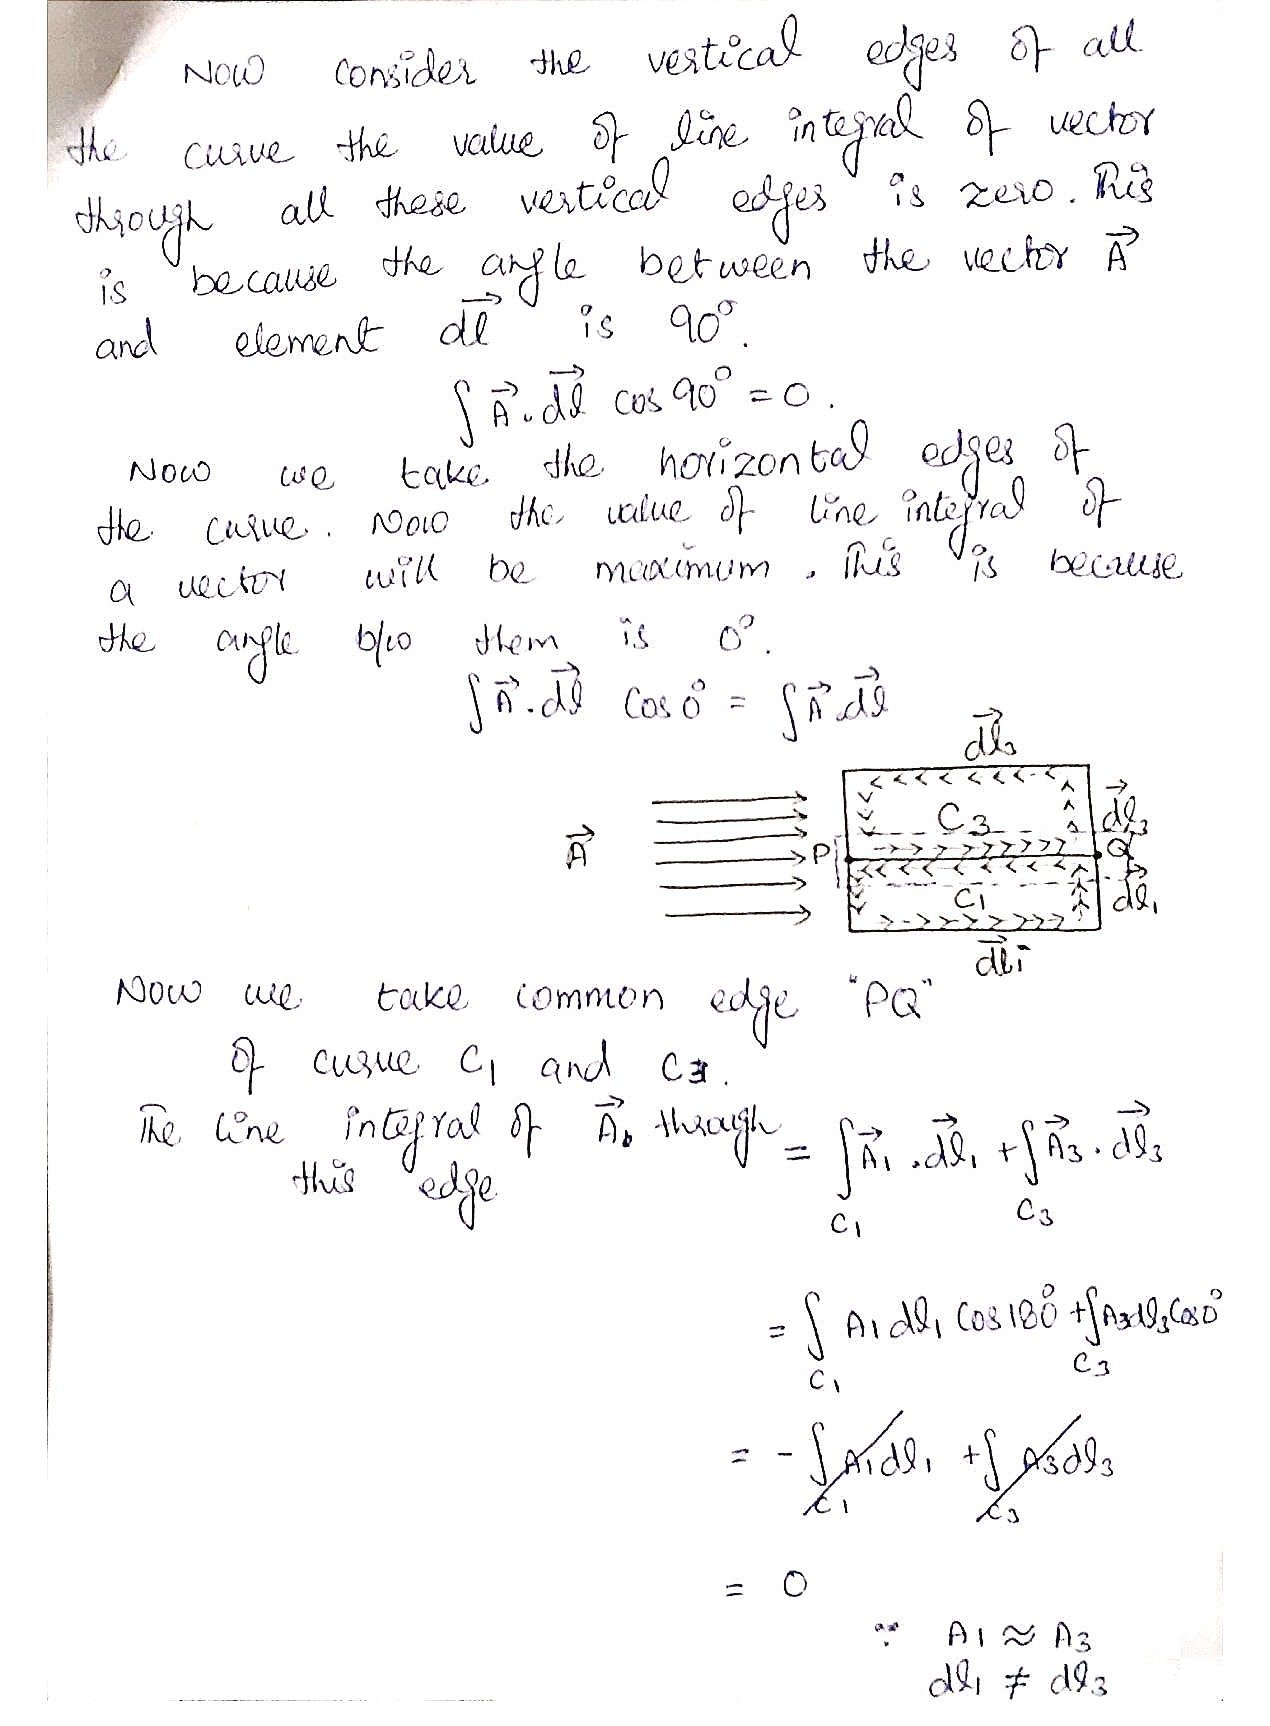 css pms notes, css notes, pms notes, css physics notes, pms physics notes, all about css pms notes, bsc physics notes, physics notes, theorem, 